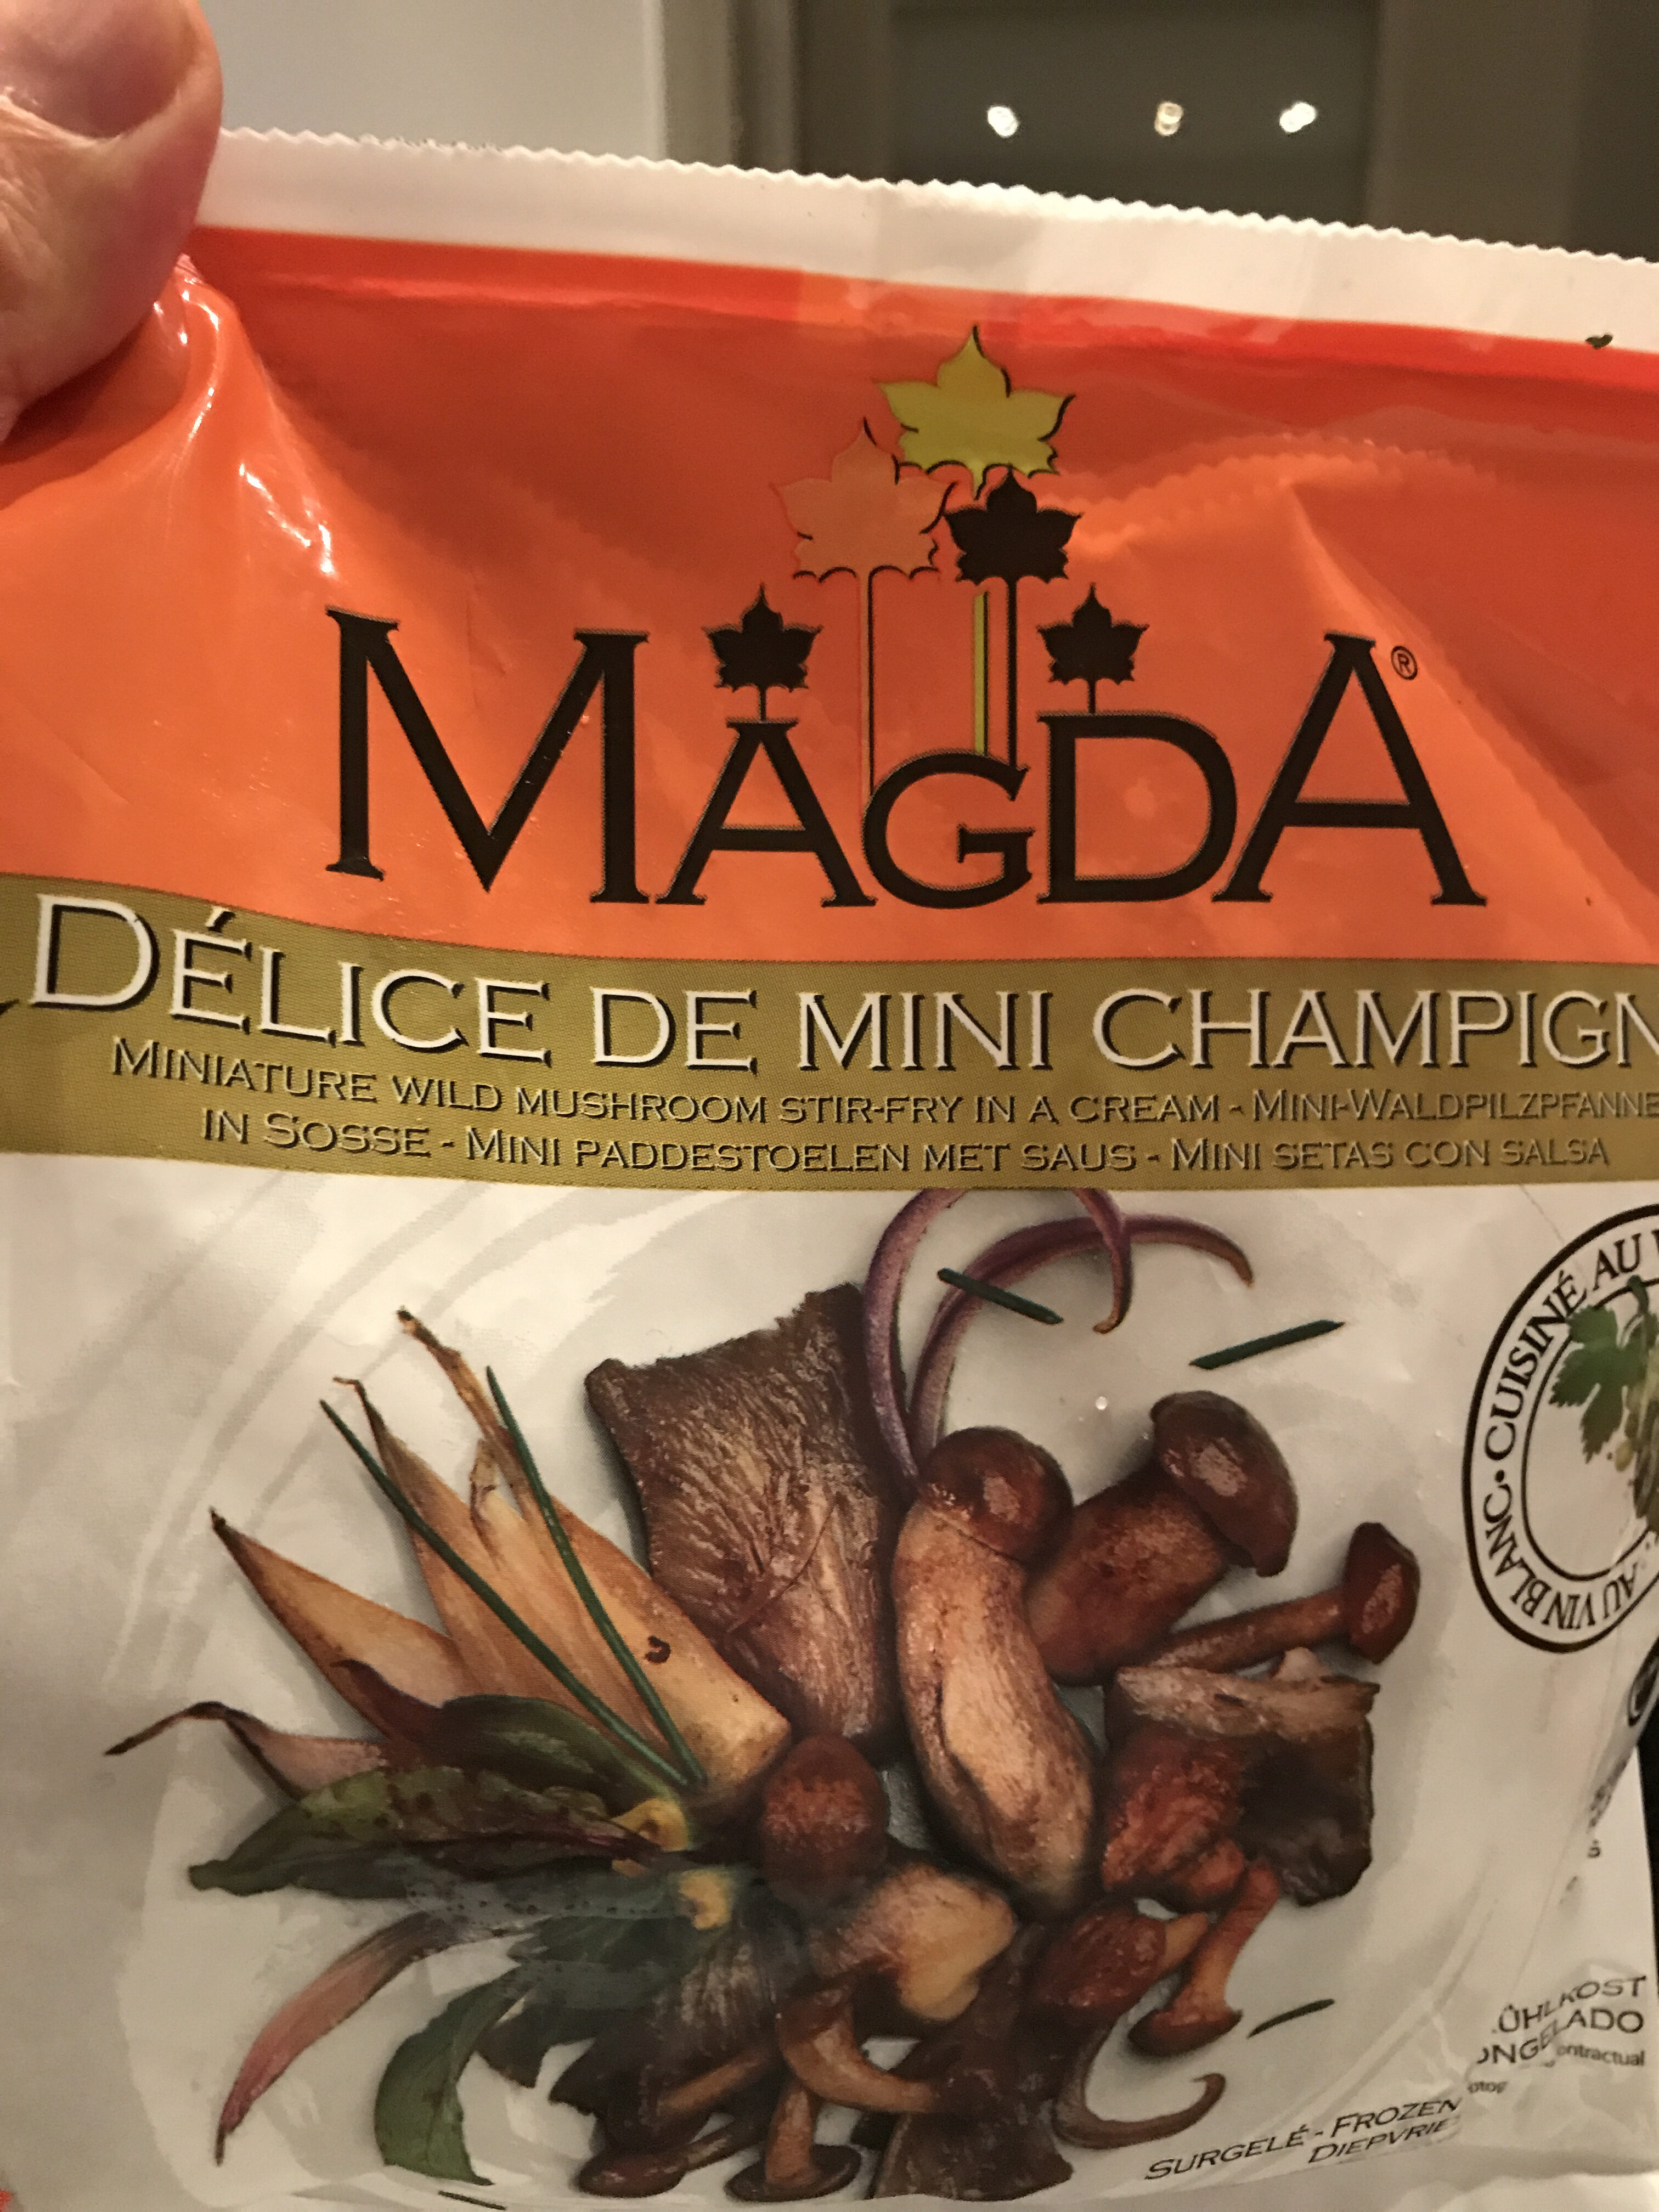 Magda délice de mini champignons - Product - fr